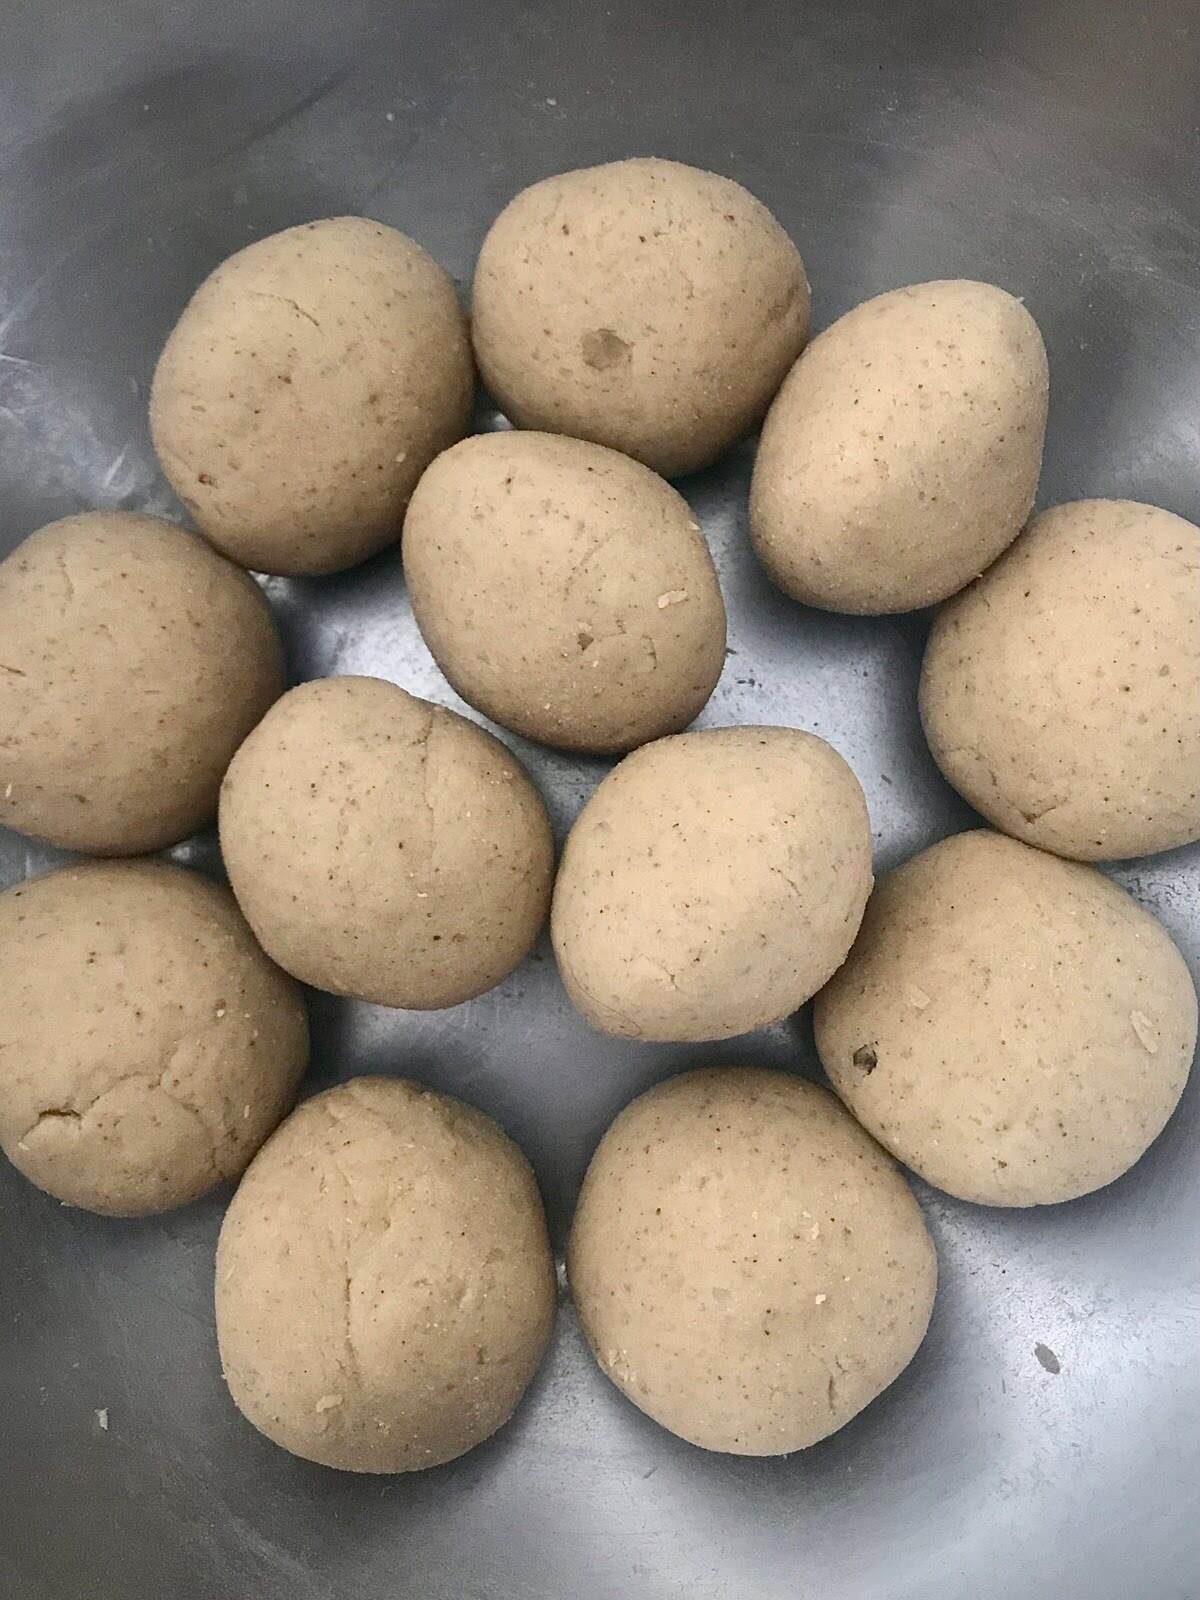 Grain free flatbread dough balls.